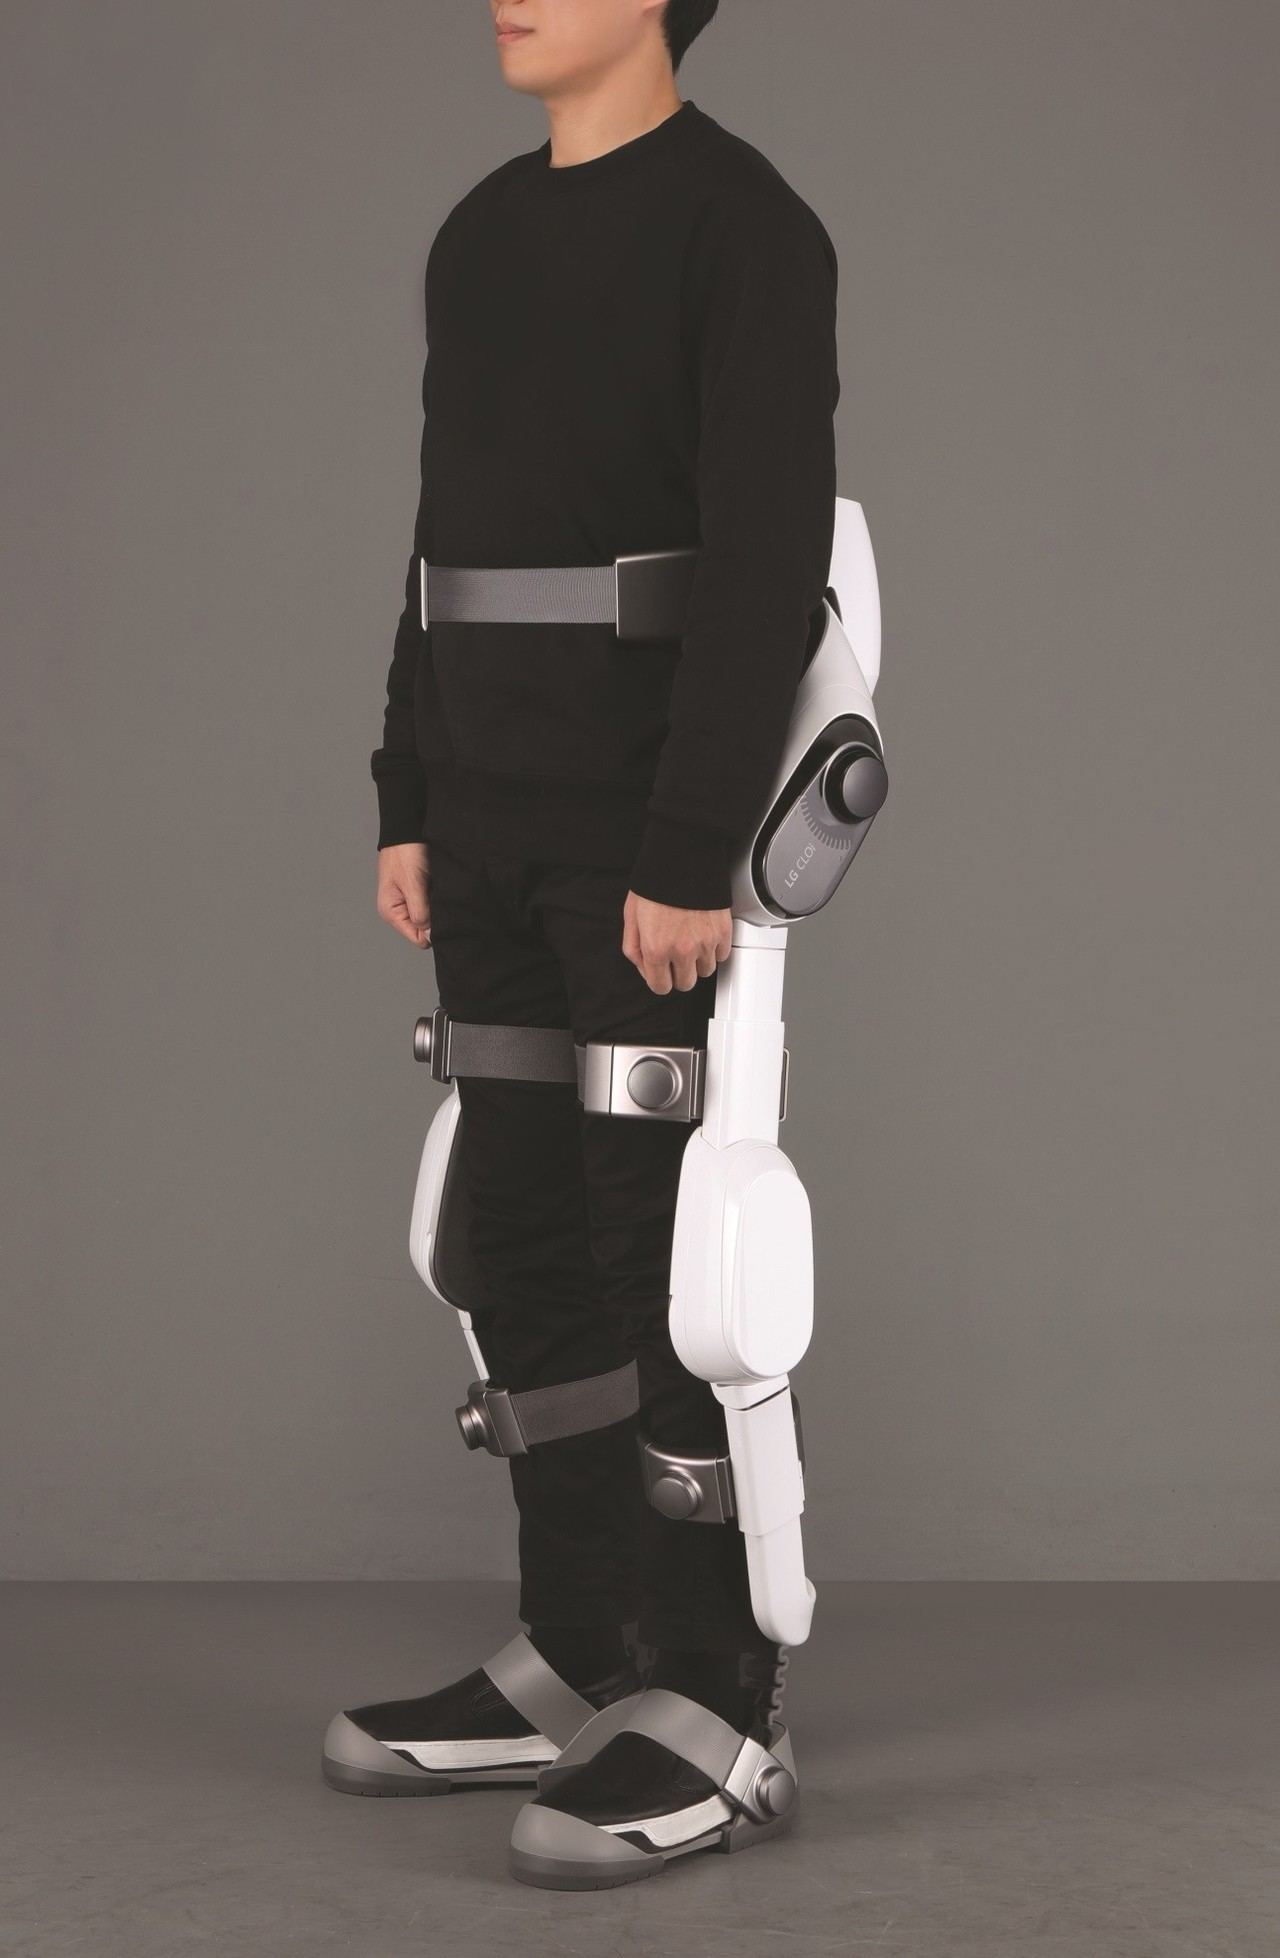 LG apuesta por los robots y presenta su exoesqueleto CLOi SuitBot